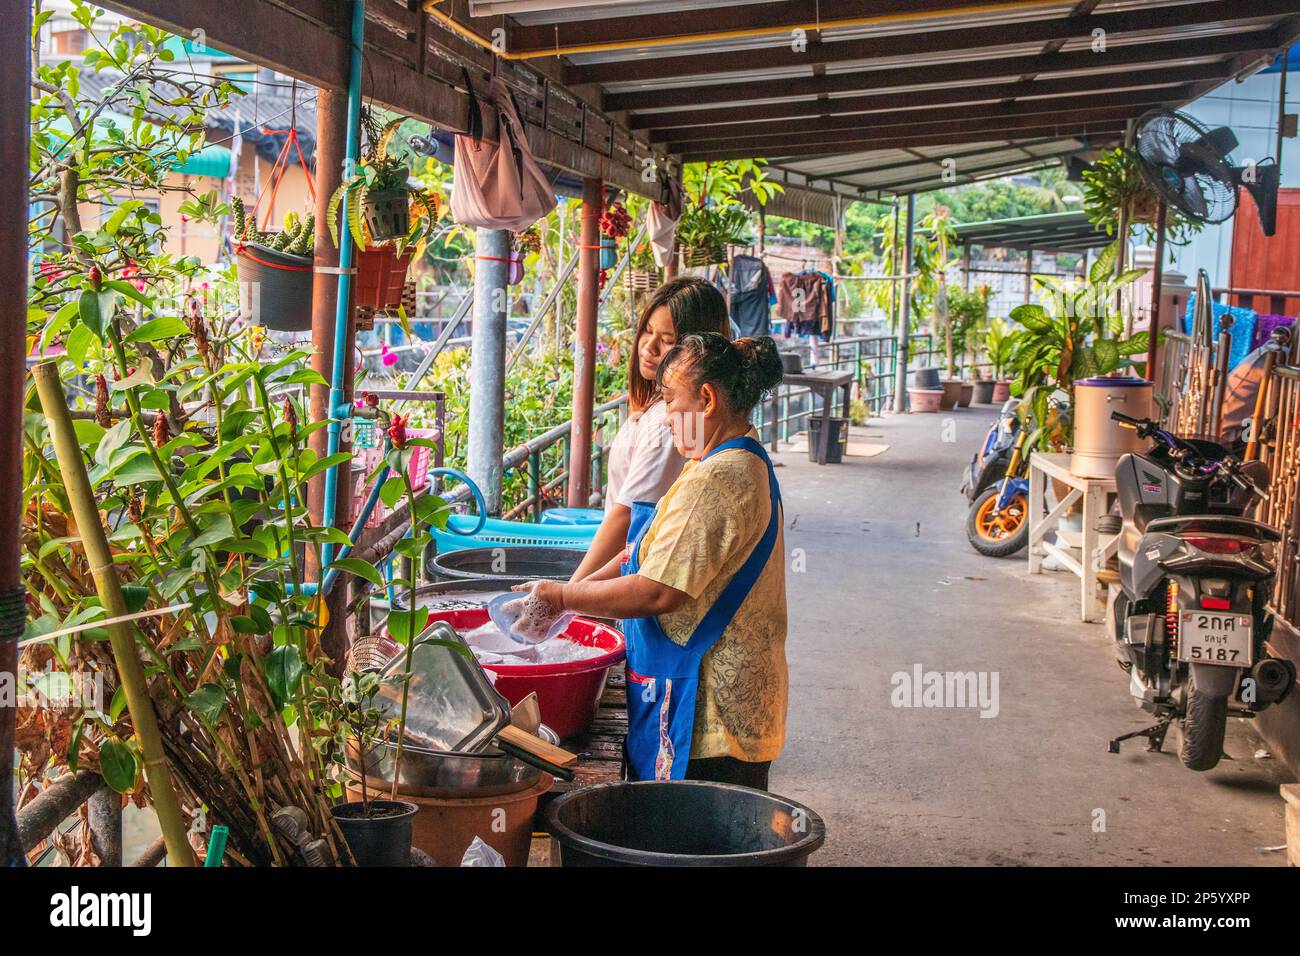 Thailändische Frauen putzen oder spülen Geschirr auf einem Weg in einem Wohngebiet in Thailand, Asien Stockfoto